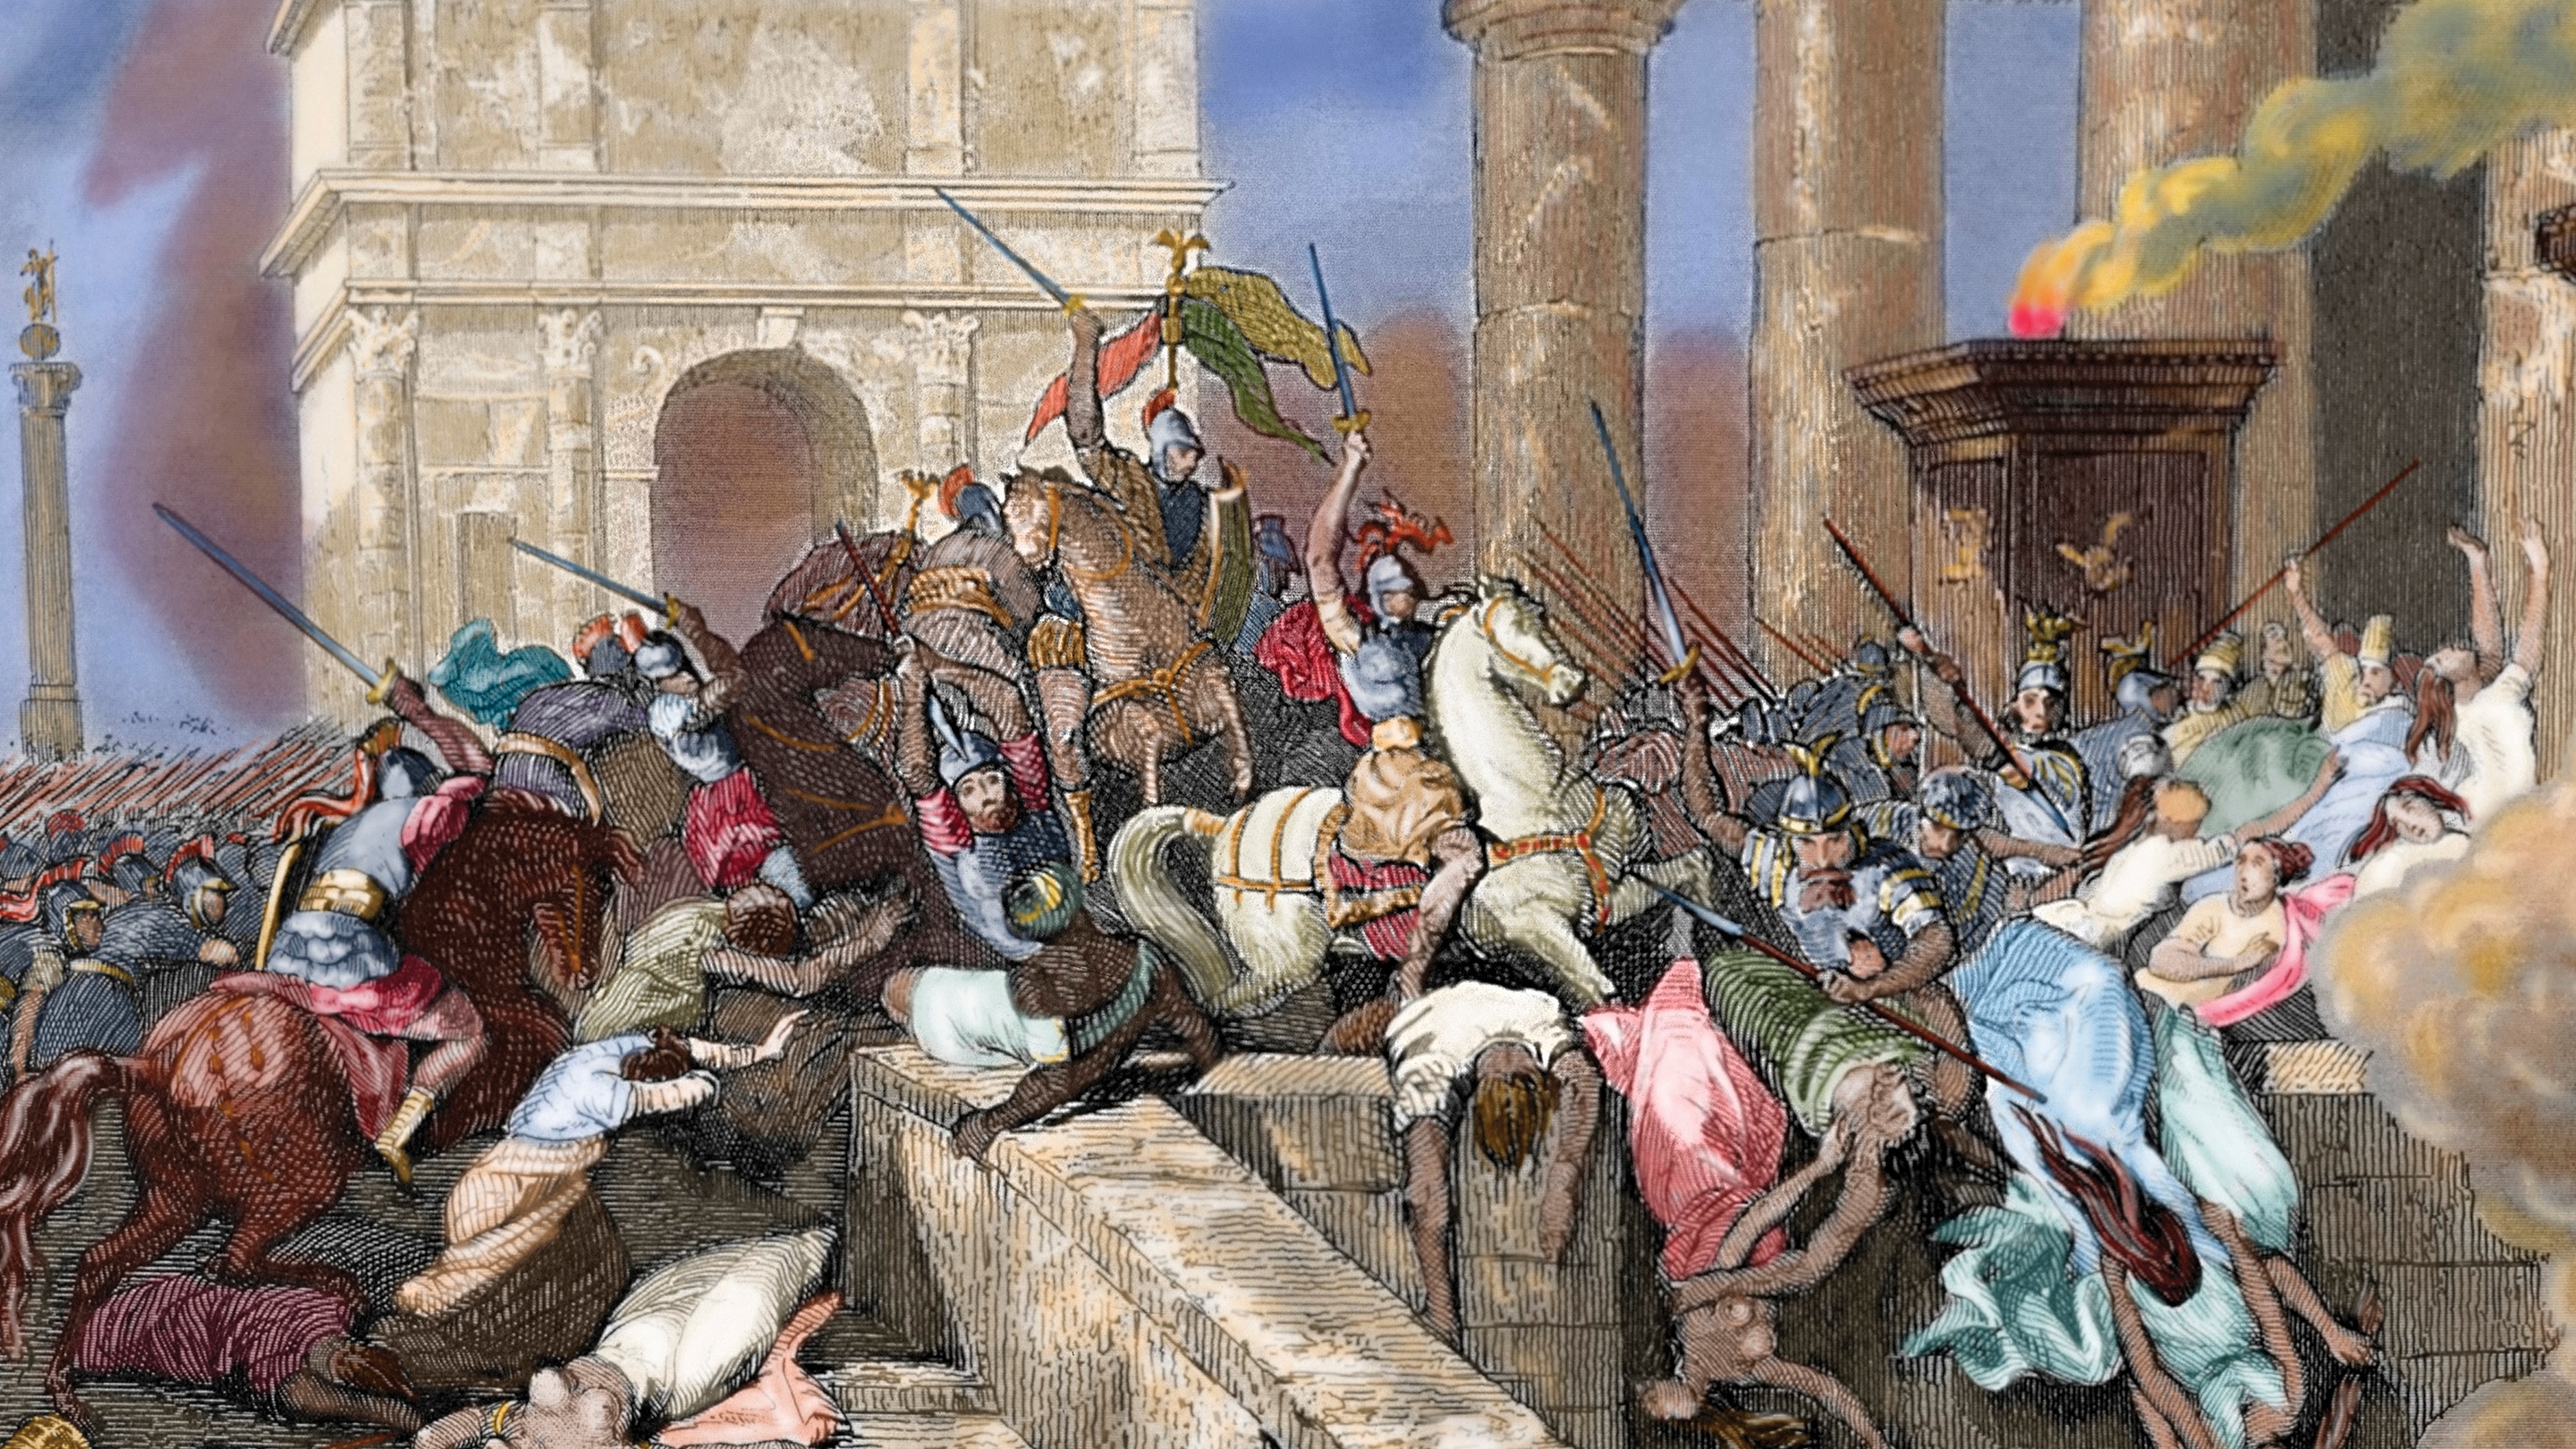 Что происходило в древнем риме. Взятие Рима готами 410. Падение Западной римской империи (476 г. н.э.). 410 Г разграбление Рима готами Алариха. Разграбление Рима 1527 картина.